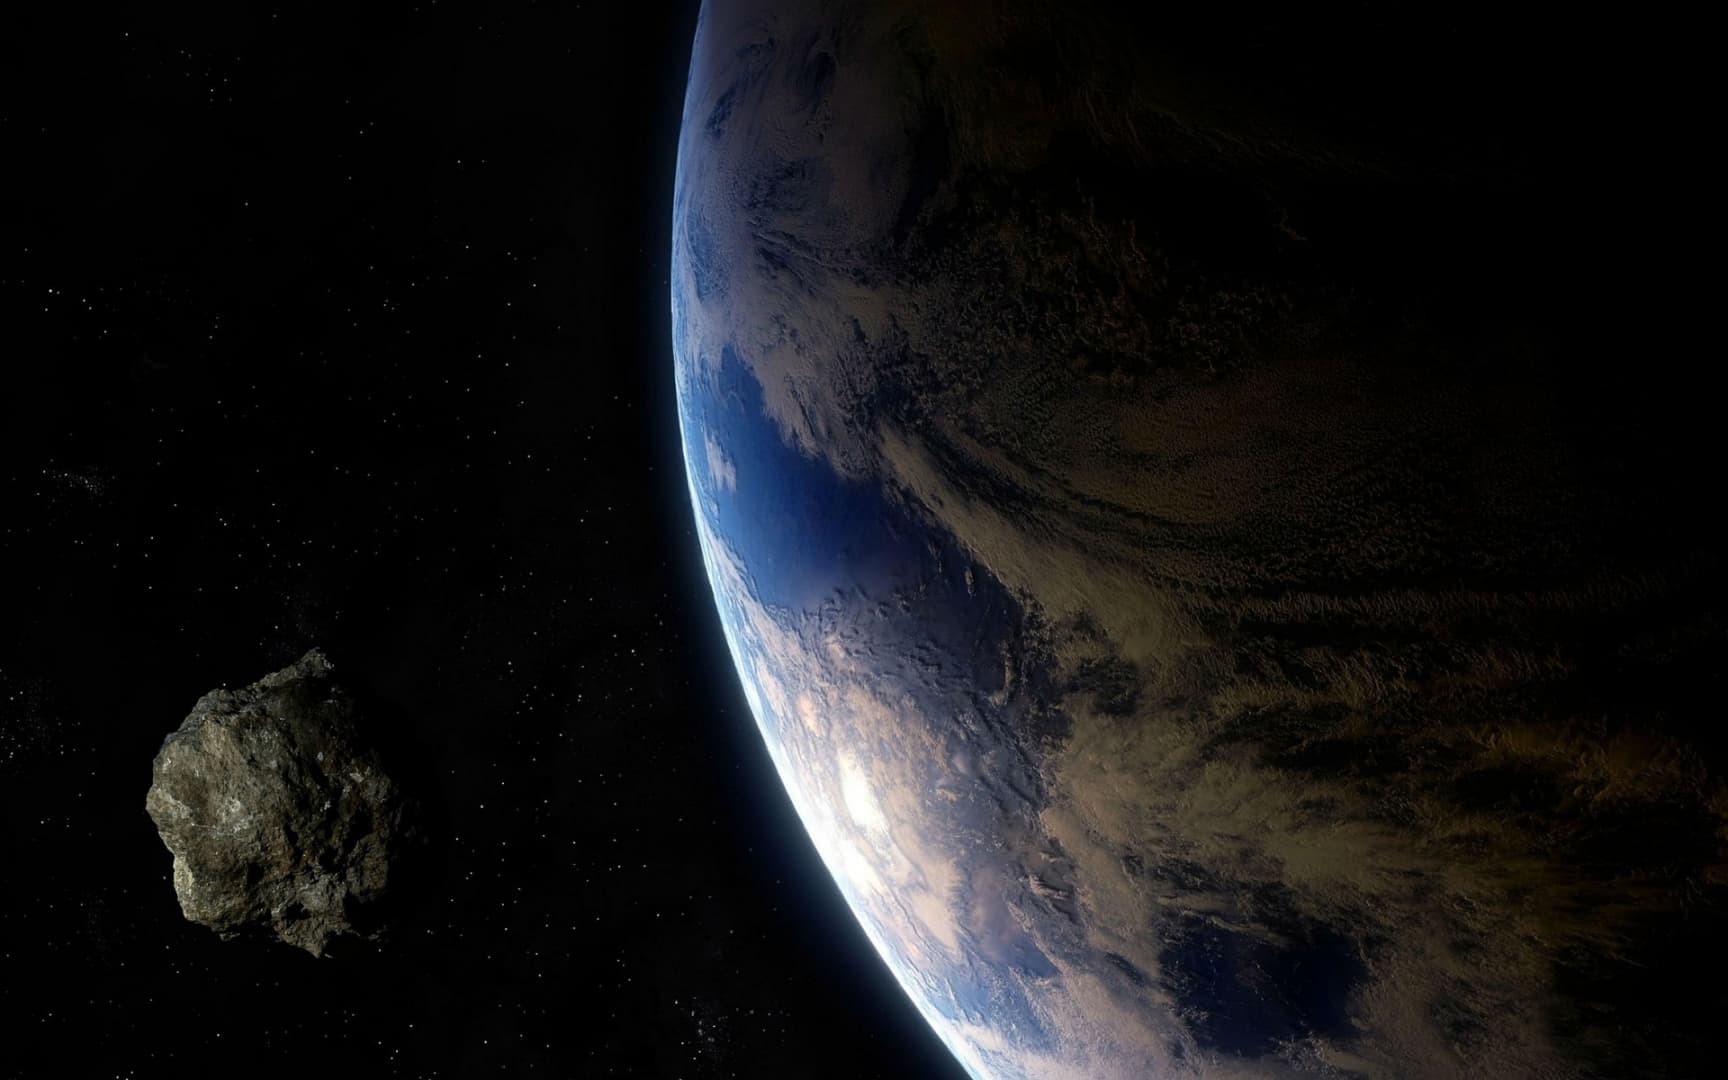 Jelentős méretű aszteroida közelíti meg a Földet pénteken